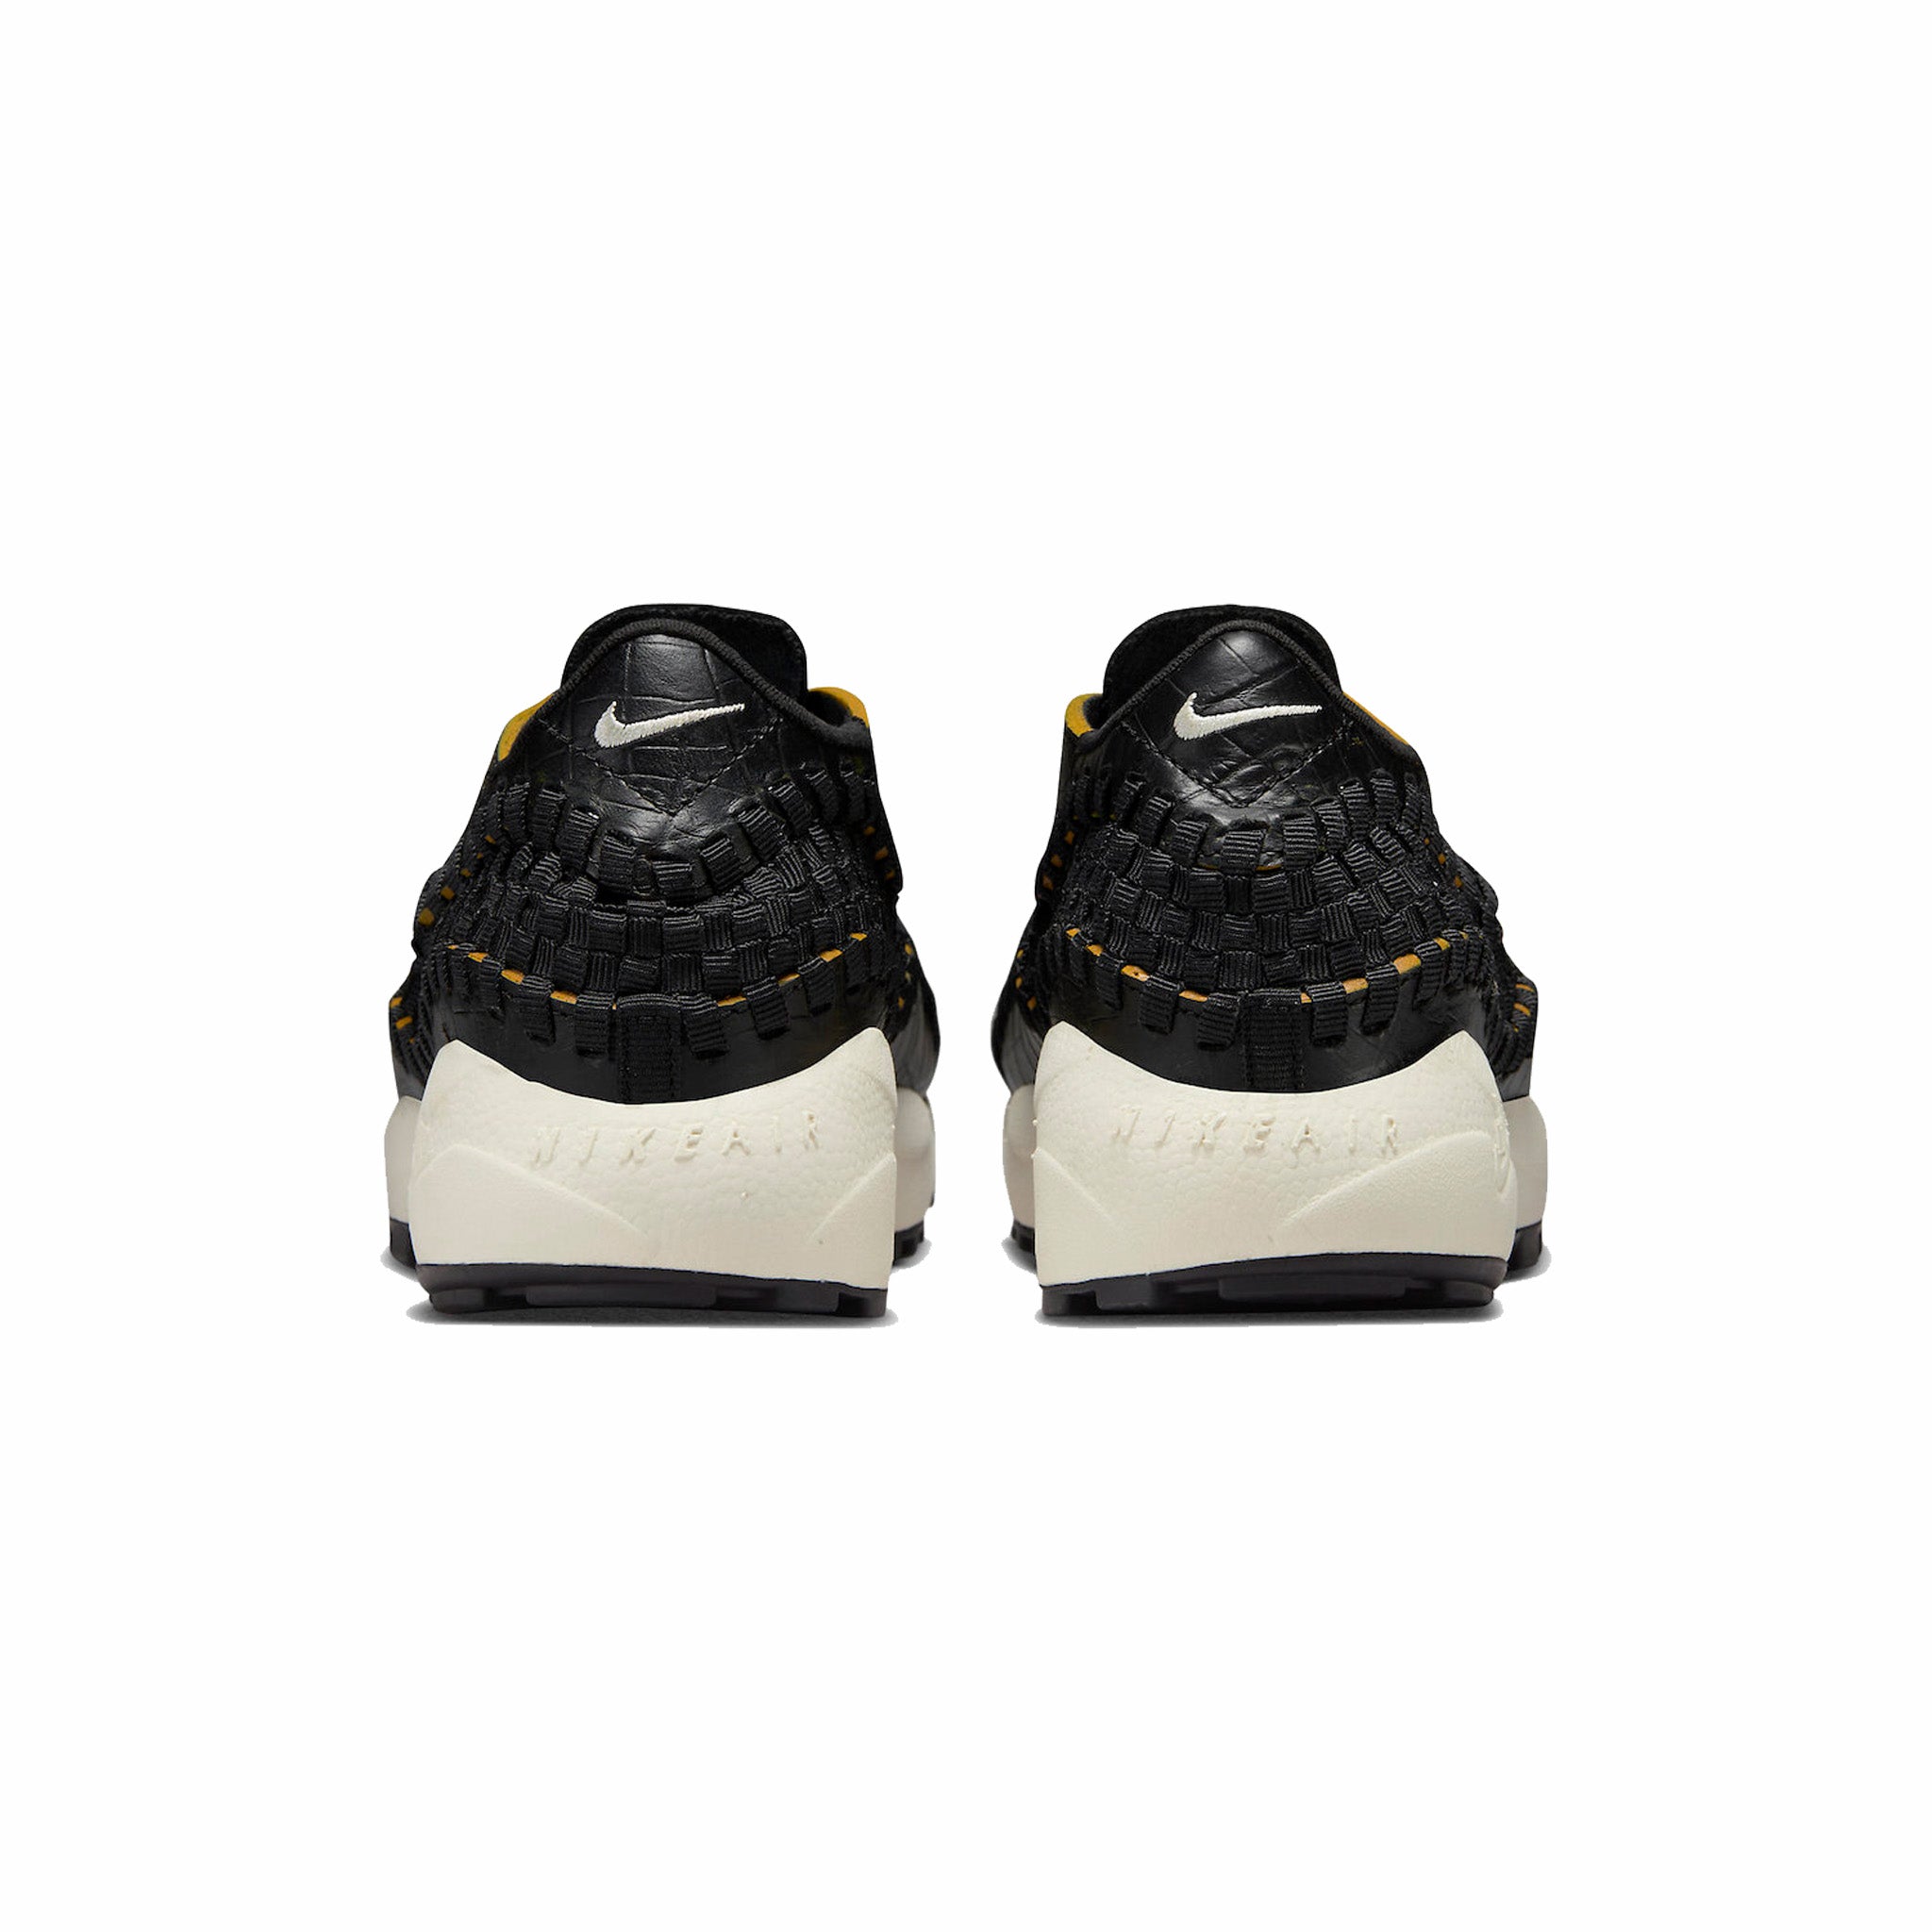 Nike Women’s Air Footscape Woven PRM “Black Croc” (Black/Pale Ivory-Desert Ochre) - August Shop